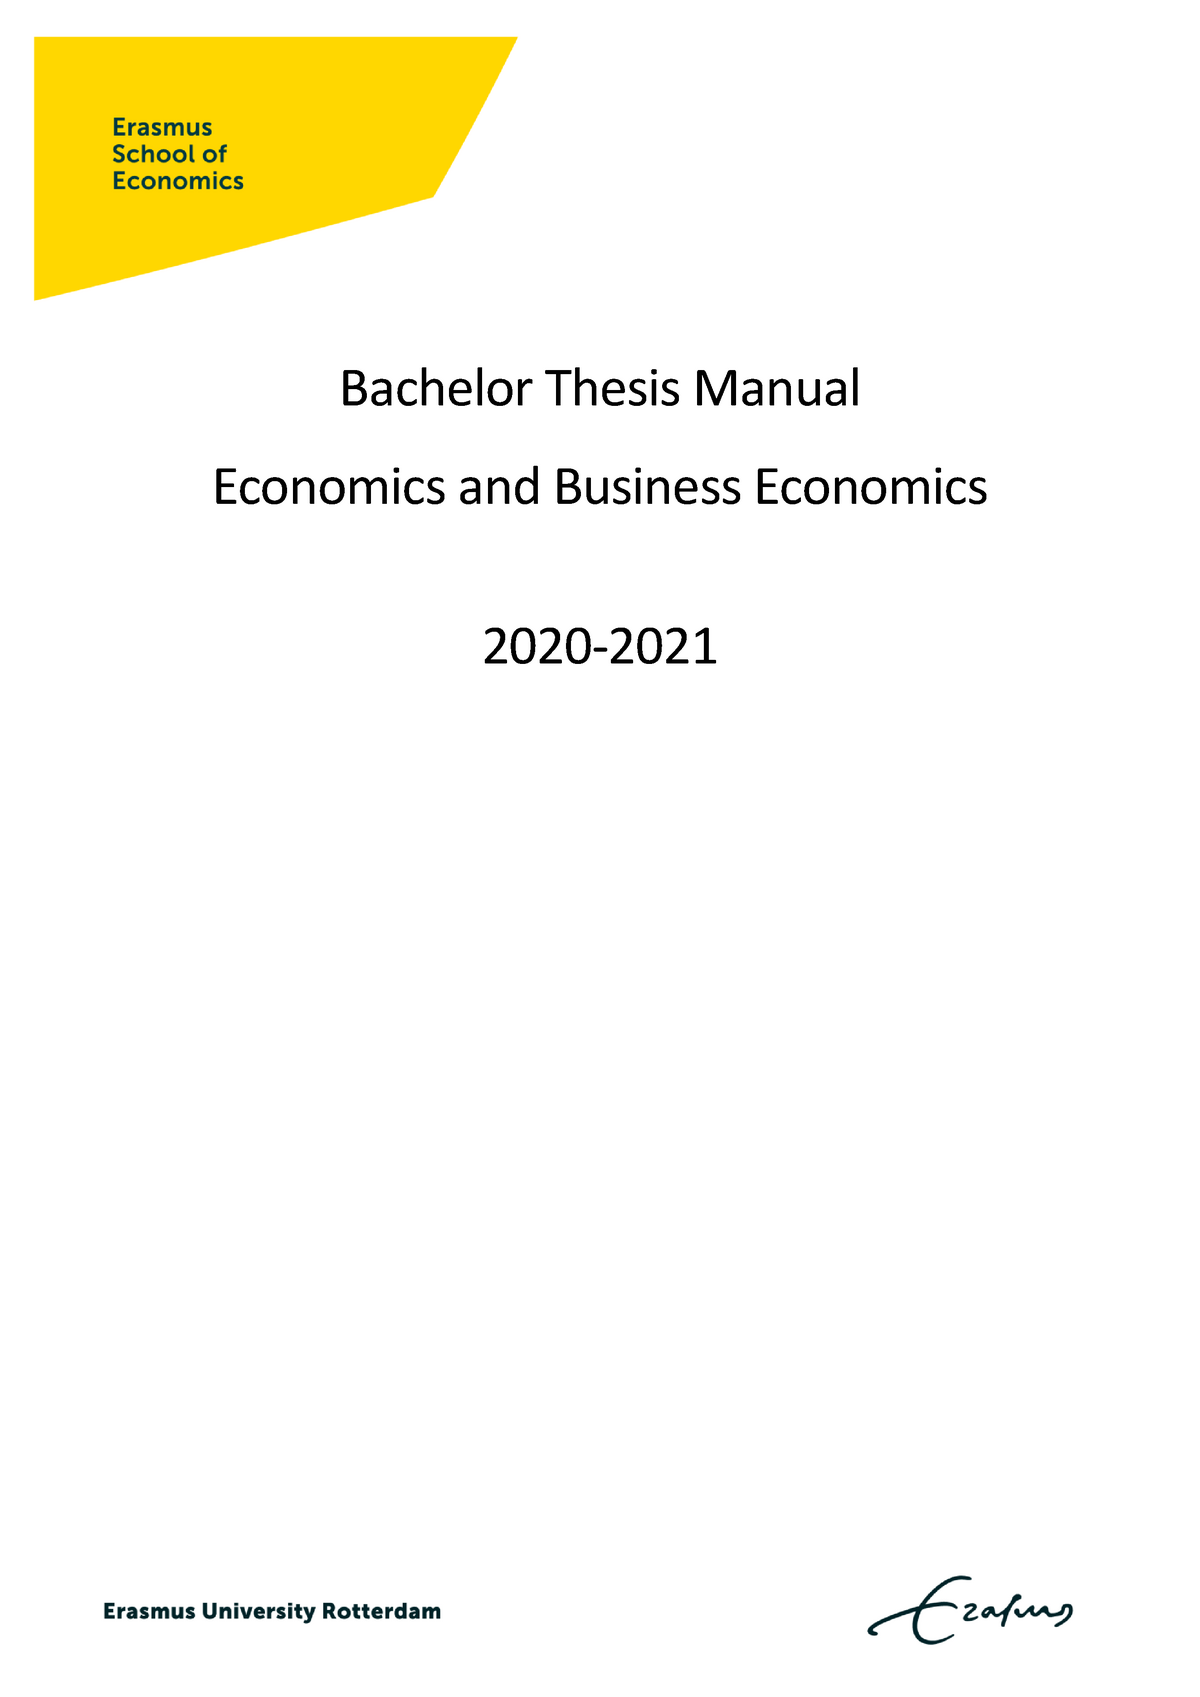 economic bachelor thesis topics